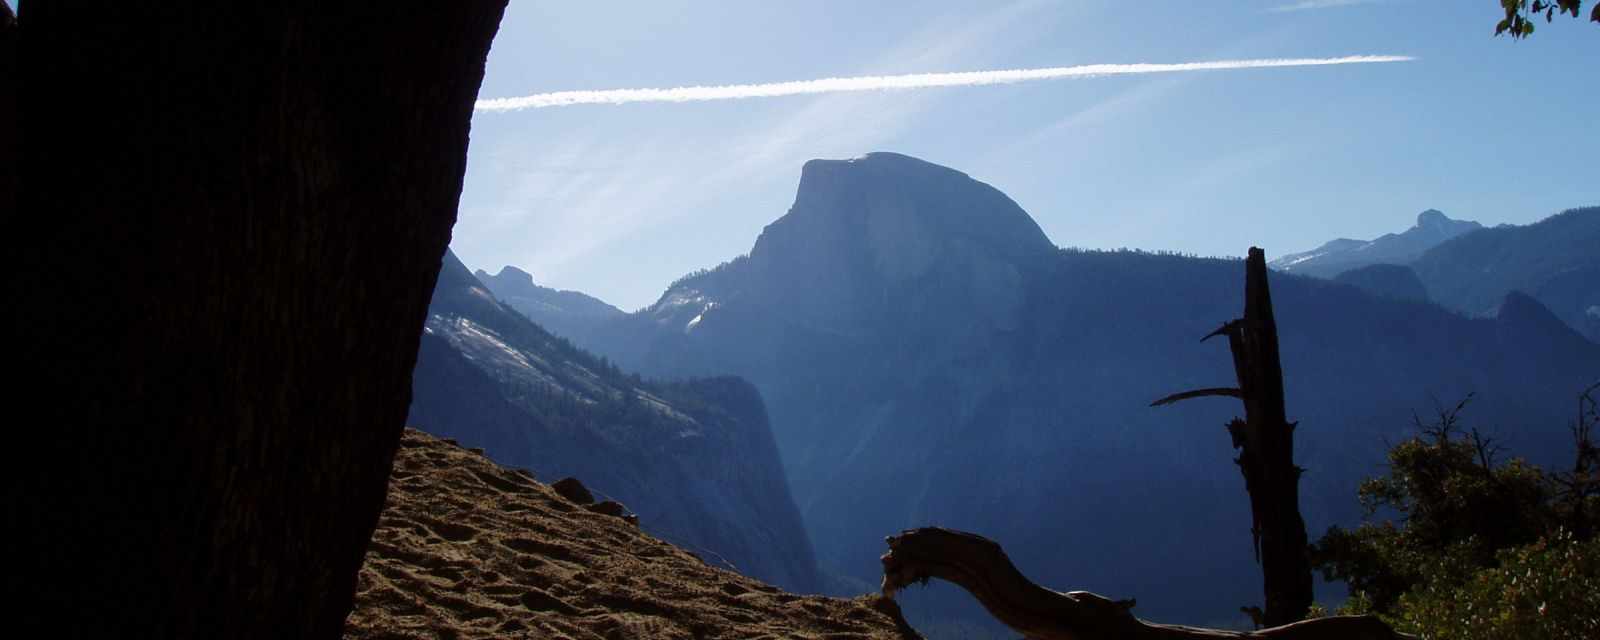 Yosemite Waterfalls and Hikes